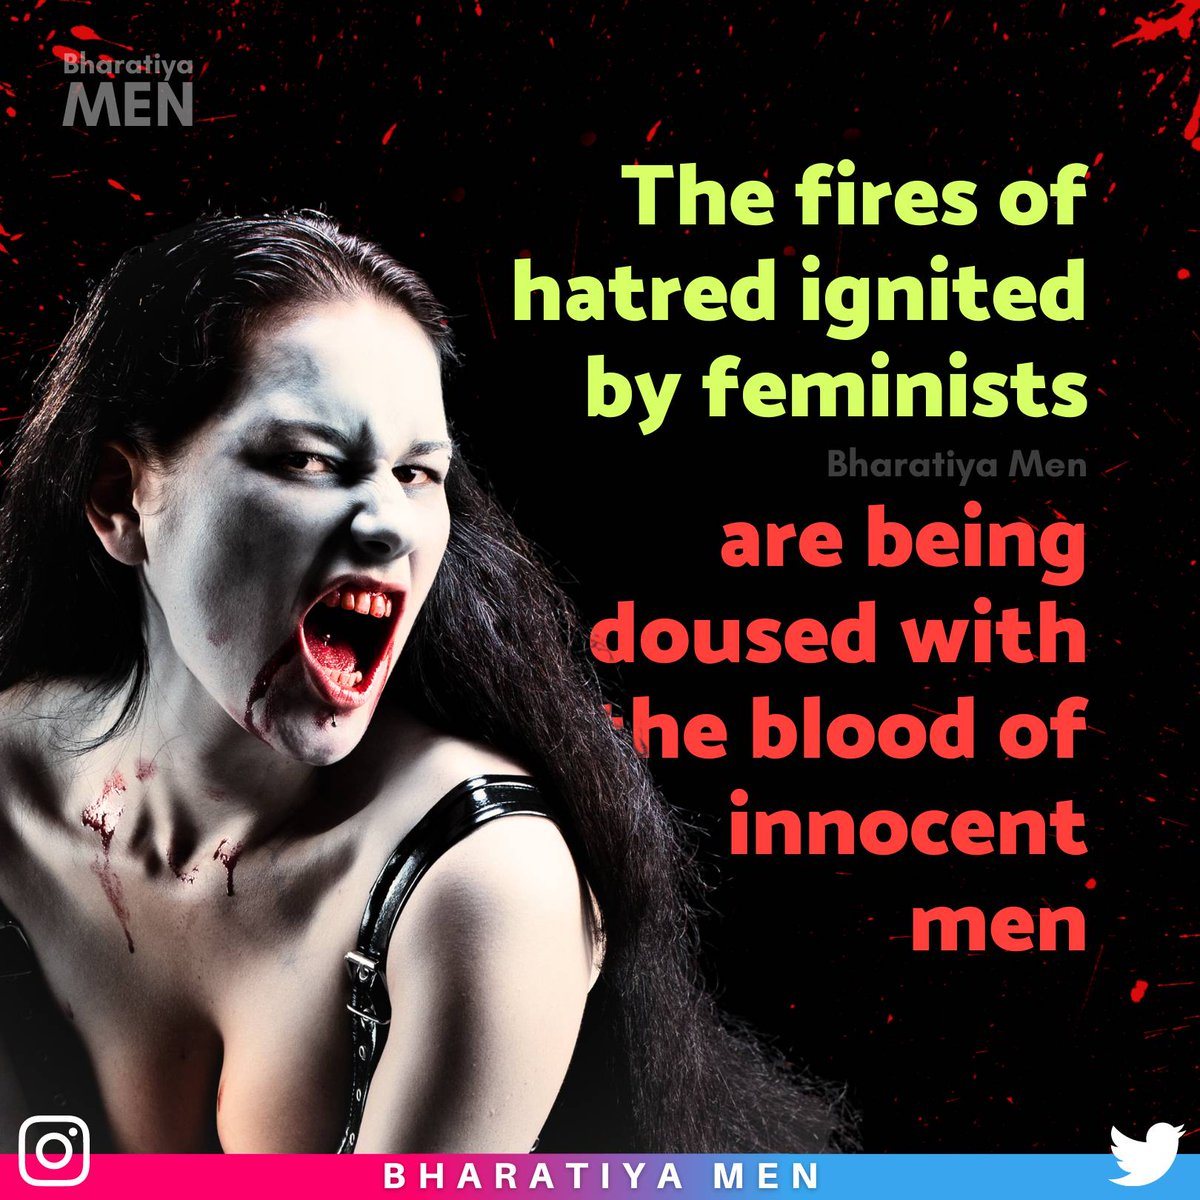 #Misandry #MenRightsAreHumanRights #Feminism #Men #MenRights #LegalTerrorism #NotMyCJI #PinkTerrorism